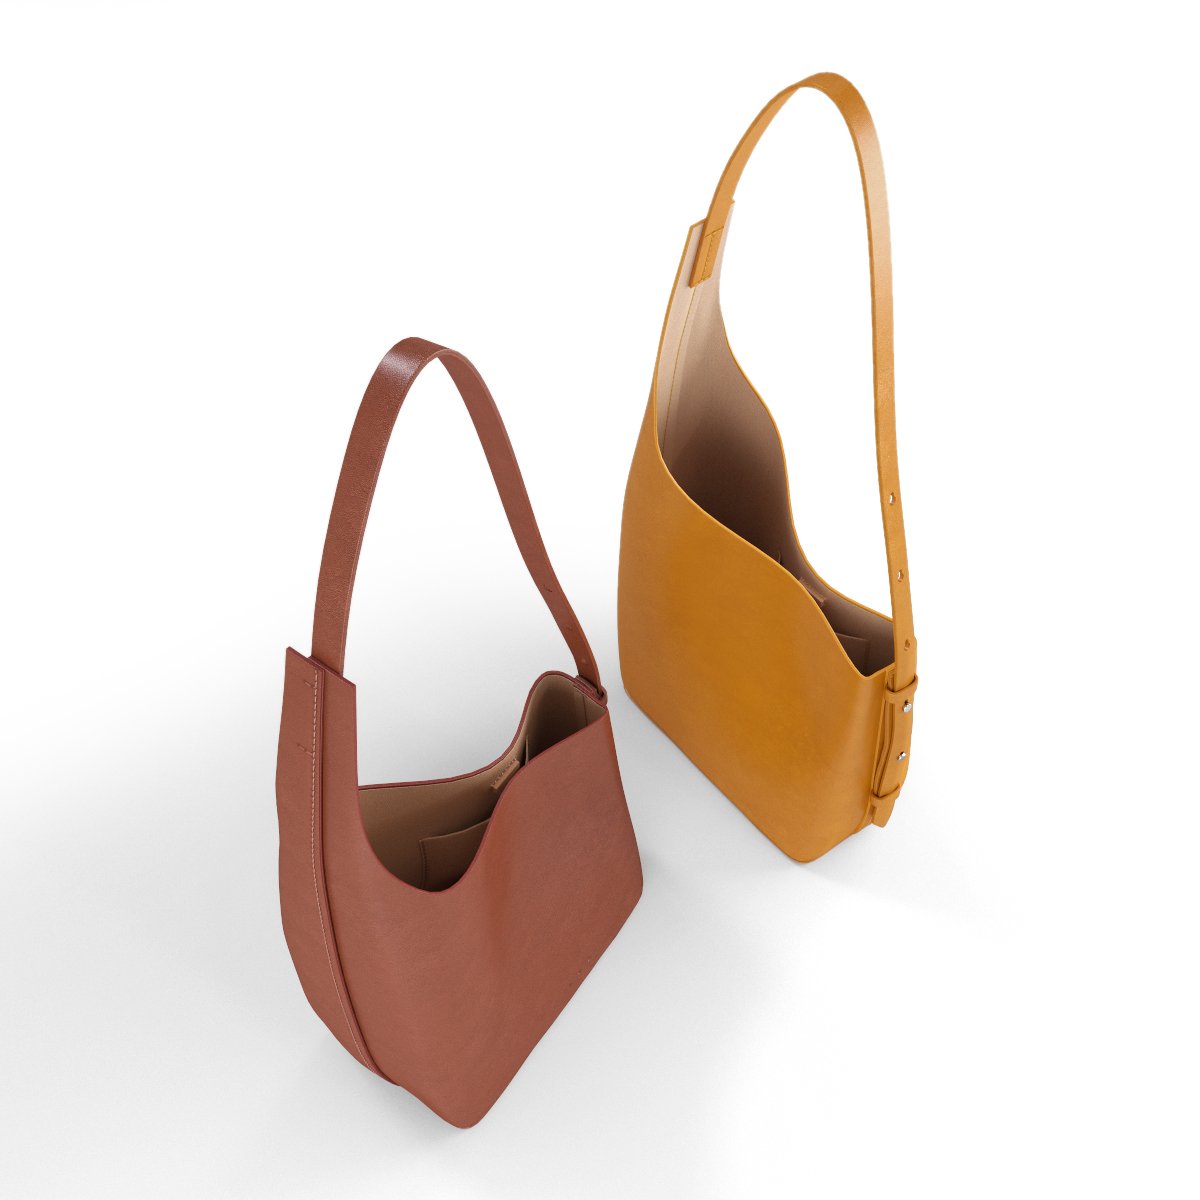 3D Model Collection Louis Vuitton Lockme Shopper Bag VR / AR / low